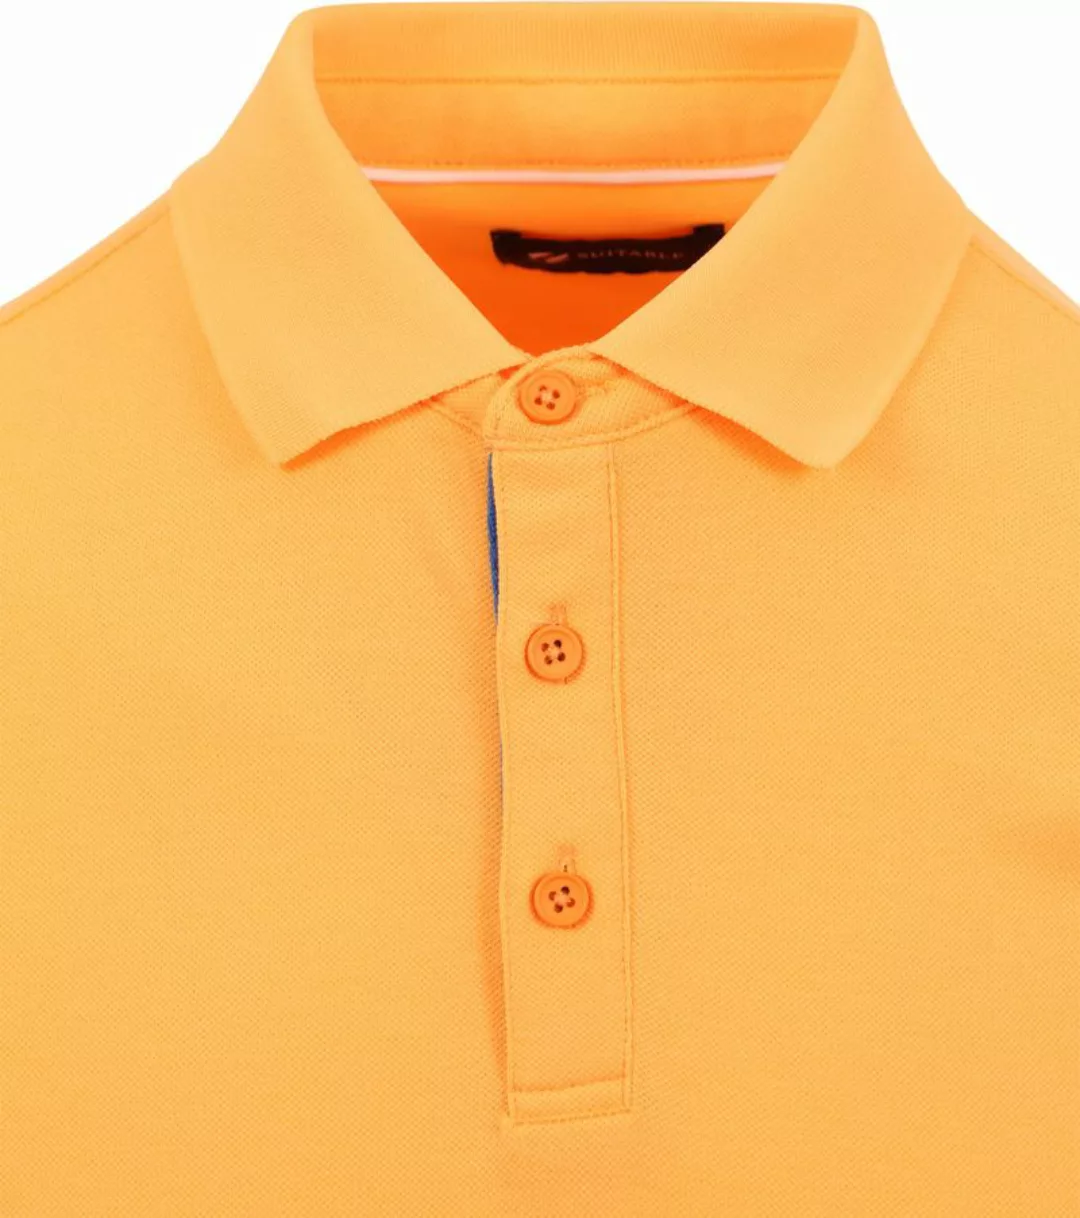 Suitable Fluo A Poloshirt Helles Orange - Größe L günstig online kaufen